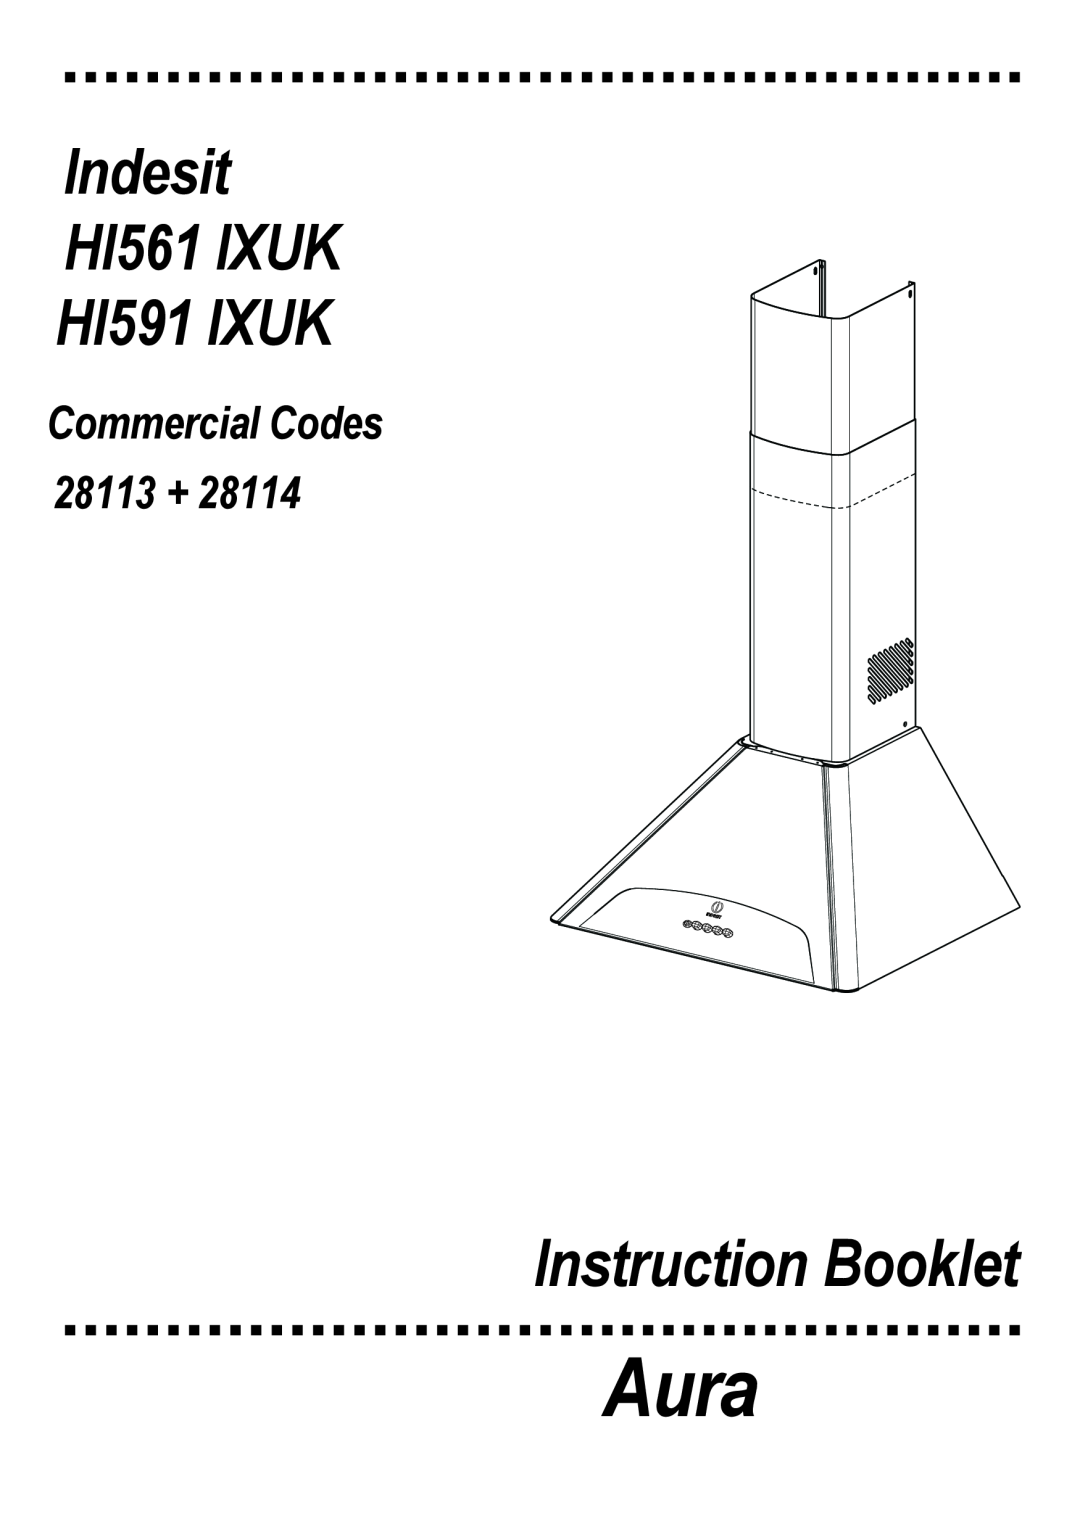 Indesit manual Aura, Instruction Booklet, Indesit HI561 IXUK HI591 IXUK, Commercial Codes 28113 + 